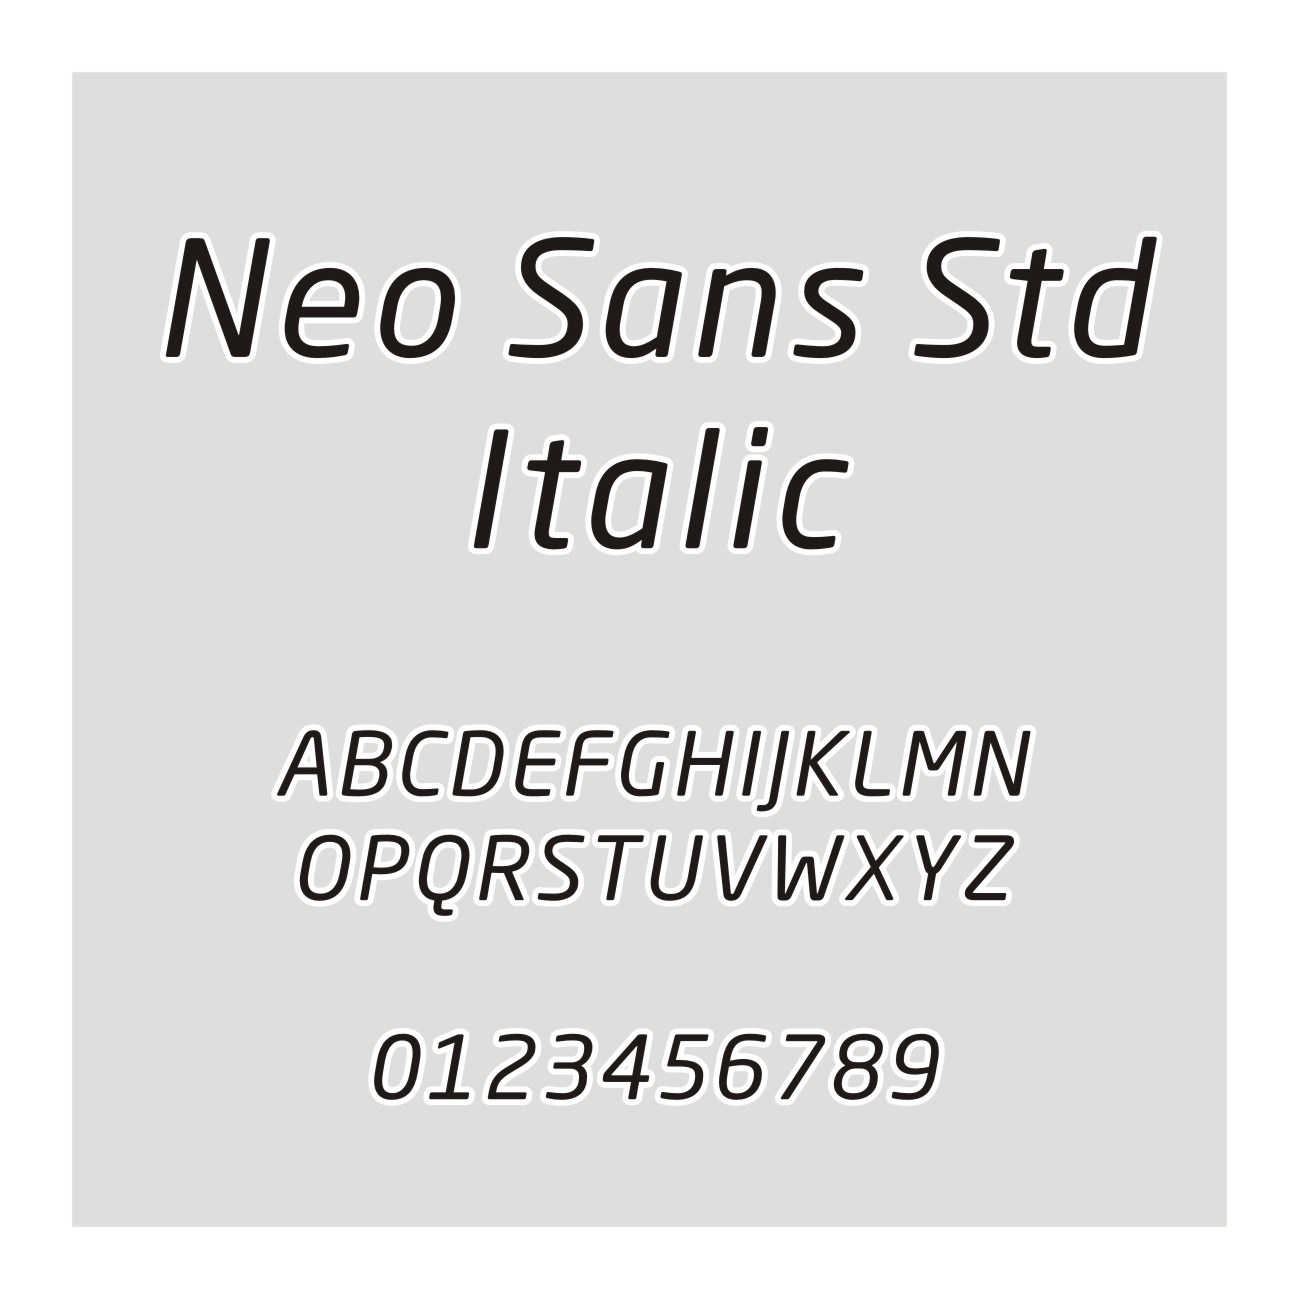 Neo Sans Std Italic